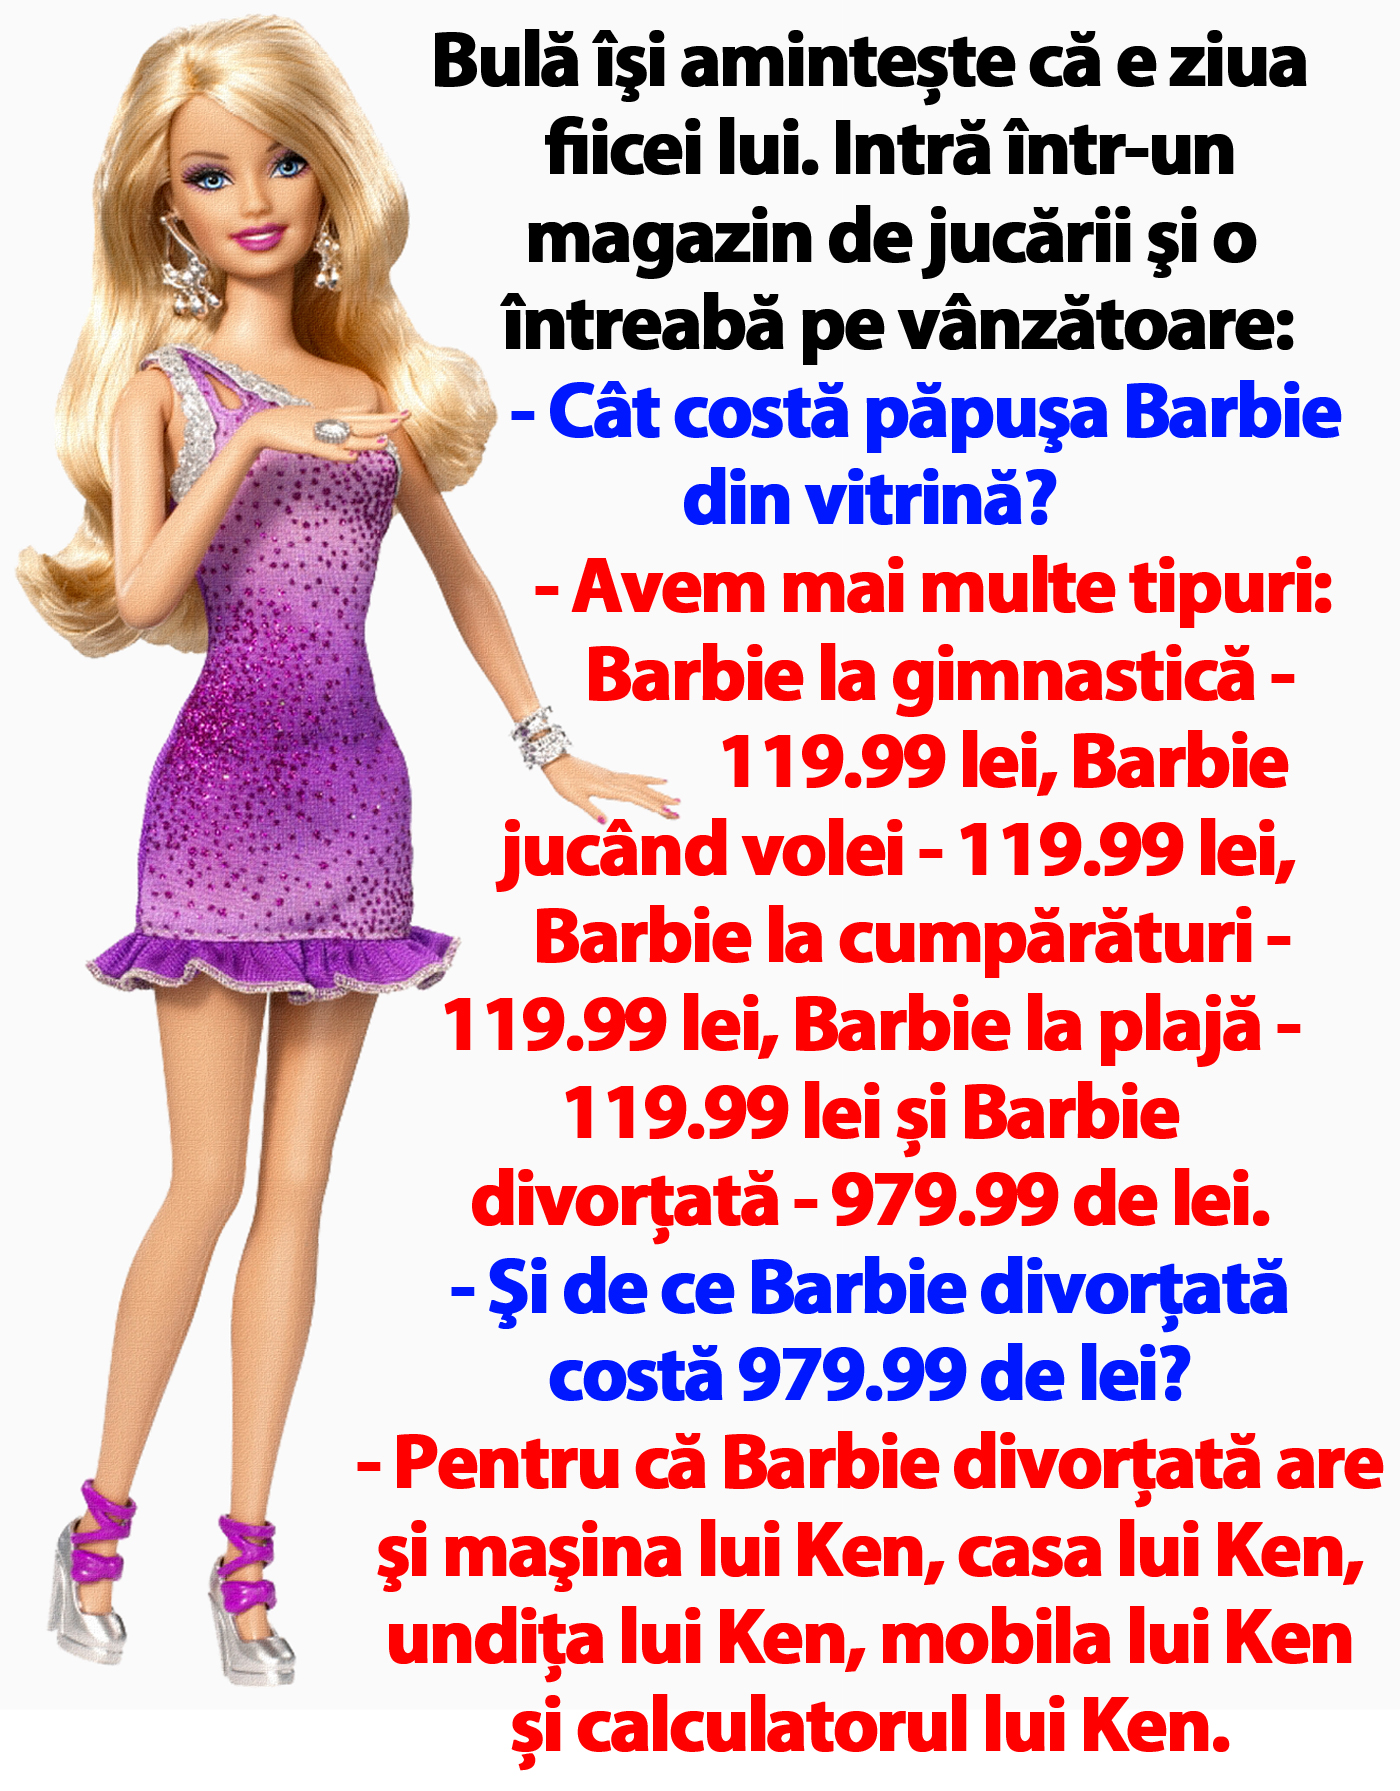 BANC | Bulă vrea să îi cumpere o păpușă Barbie fiicei lui, de ziua ei de naștere